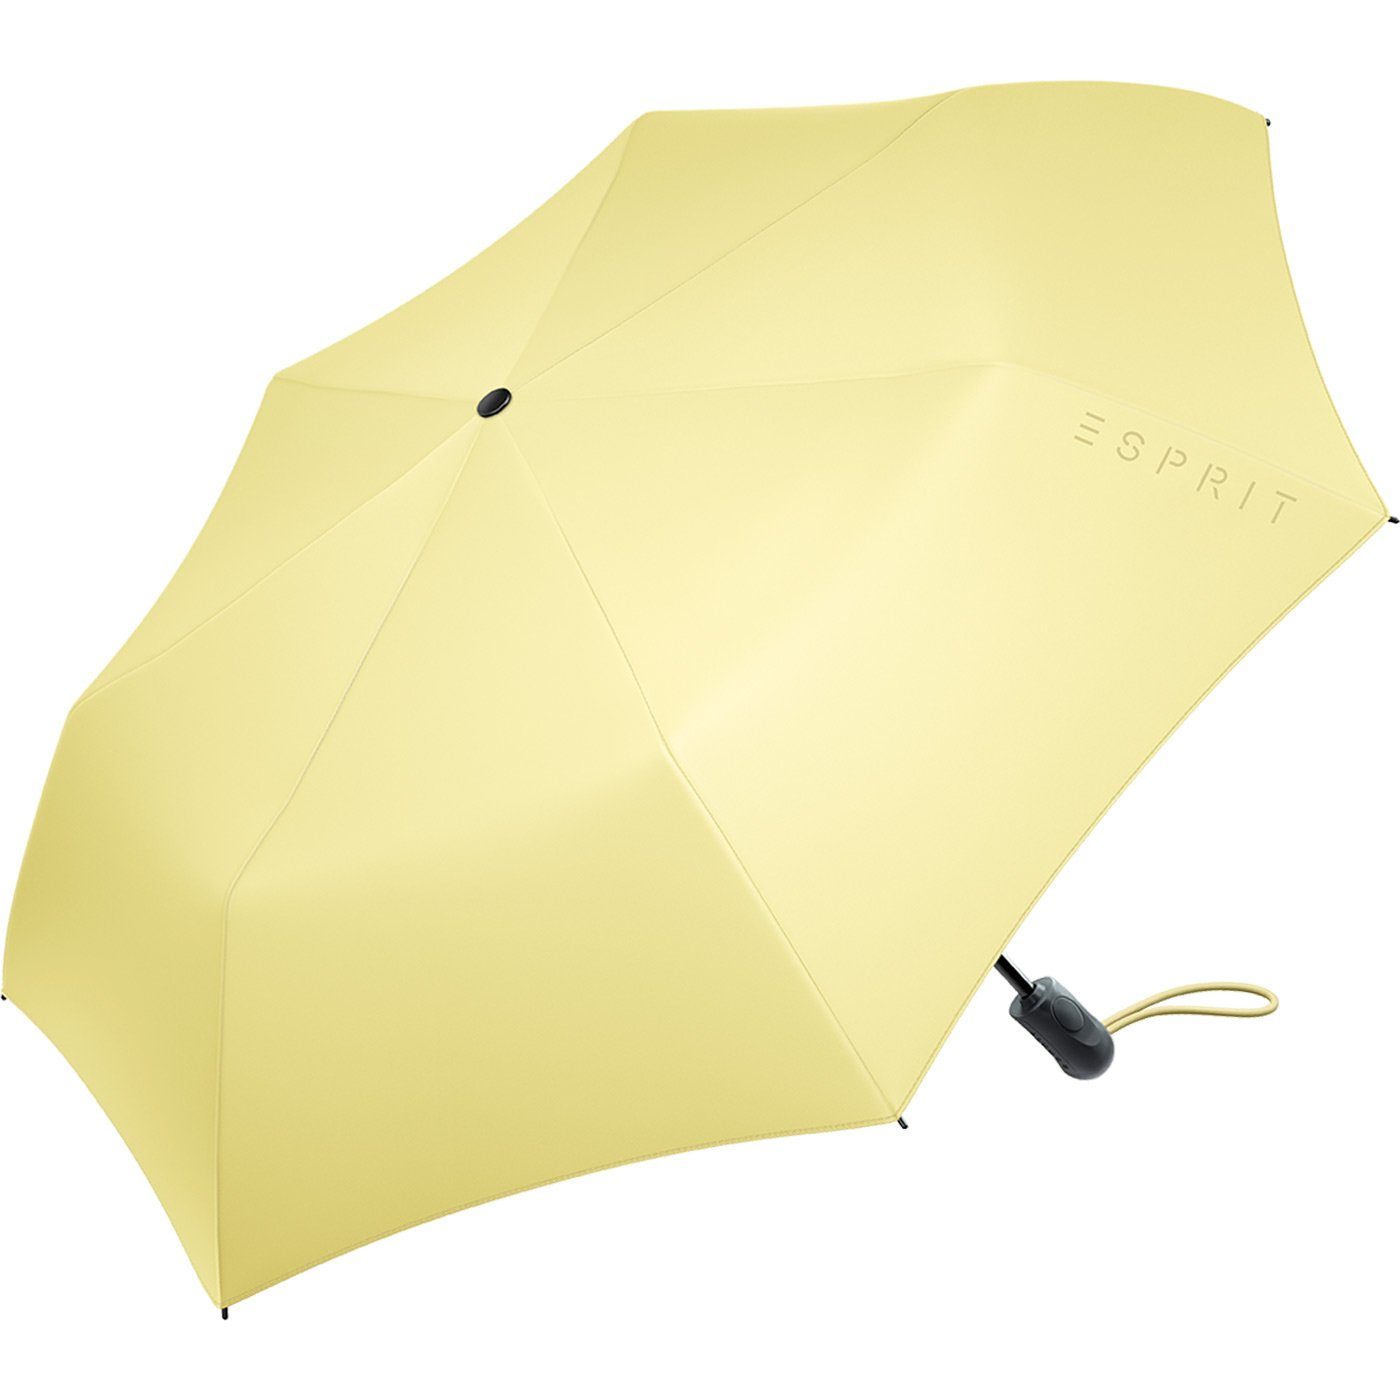 Damen Easymatic Light Esprit 2022, neuen stabil in Trendfarben und gelb den Automatik praktisch, Taschenregenschirm Auf-Zu FJ